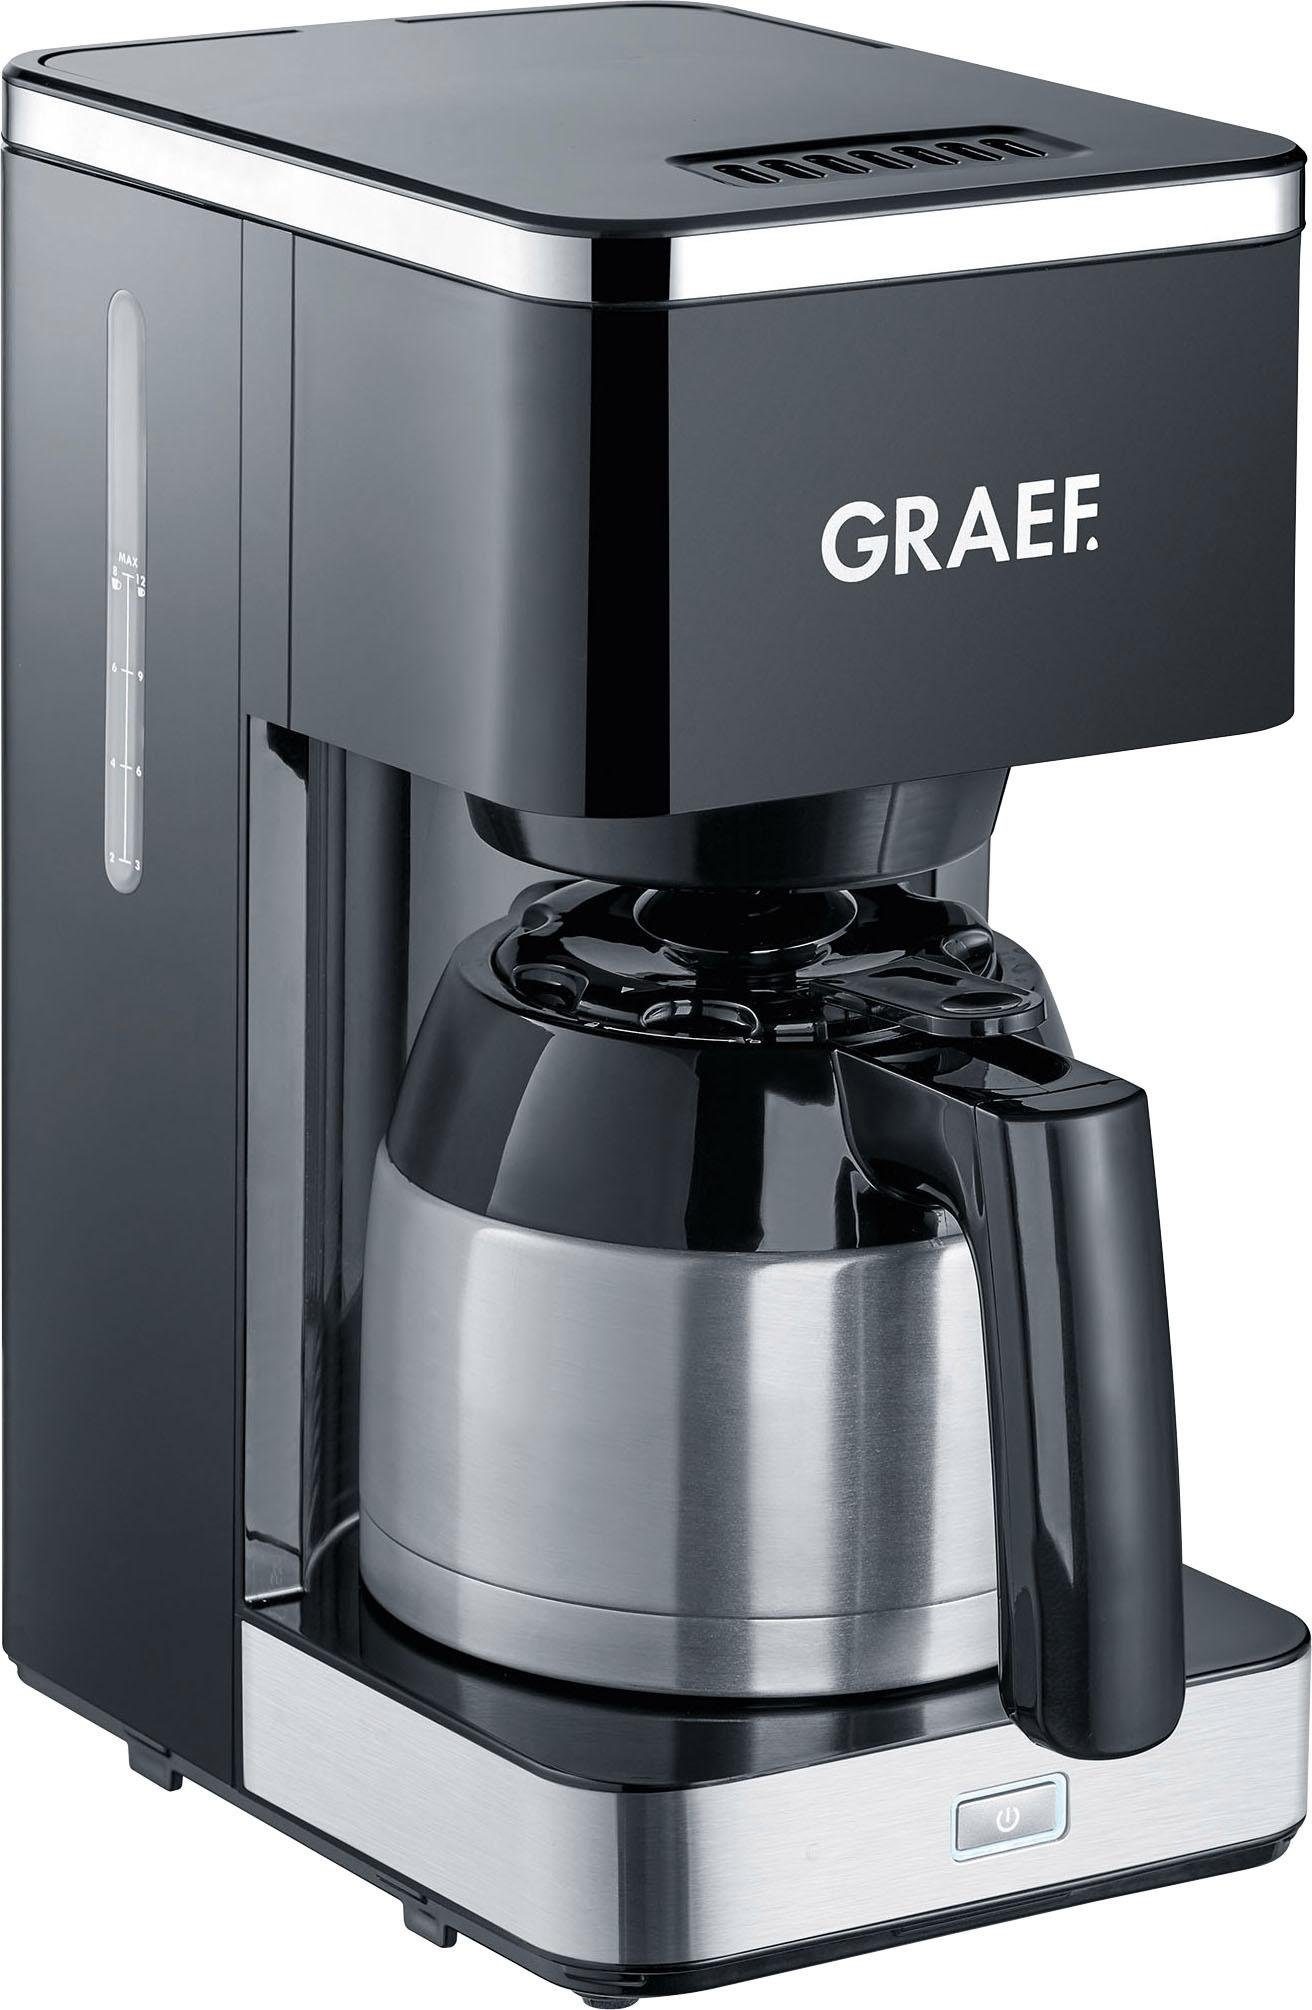 Graef Filterkaffeemaschine »FK 412«, 1 l Kaffeekanne, Korbfilter, 1x4, mit Thermokanne, schwarz